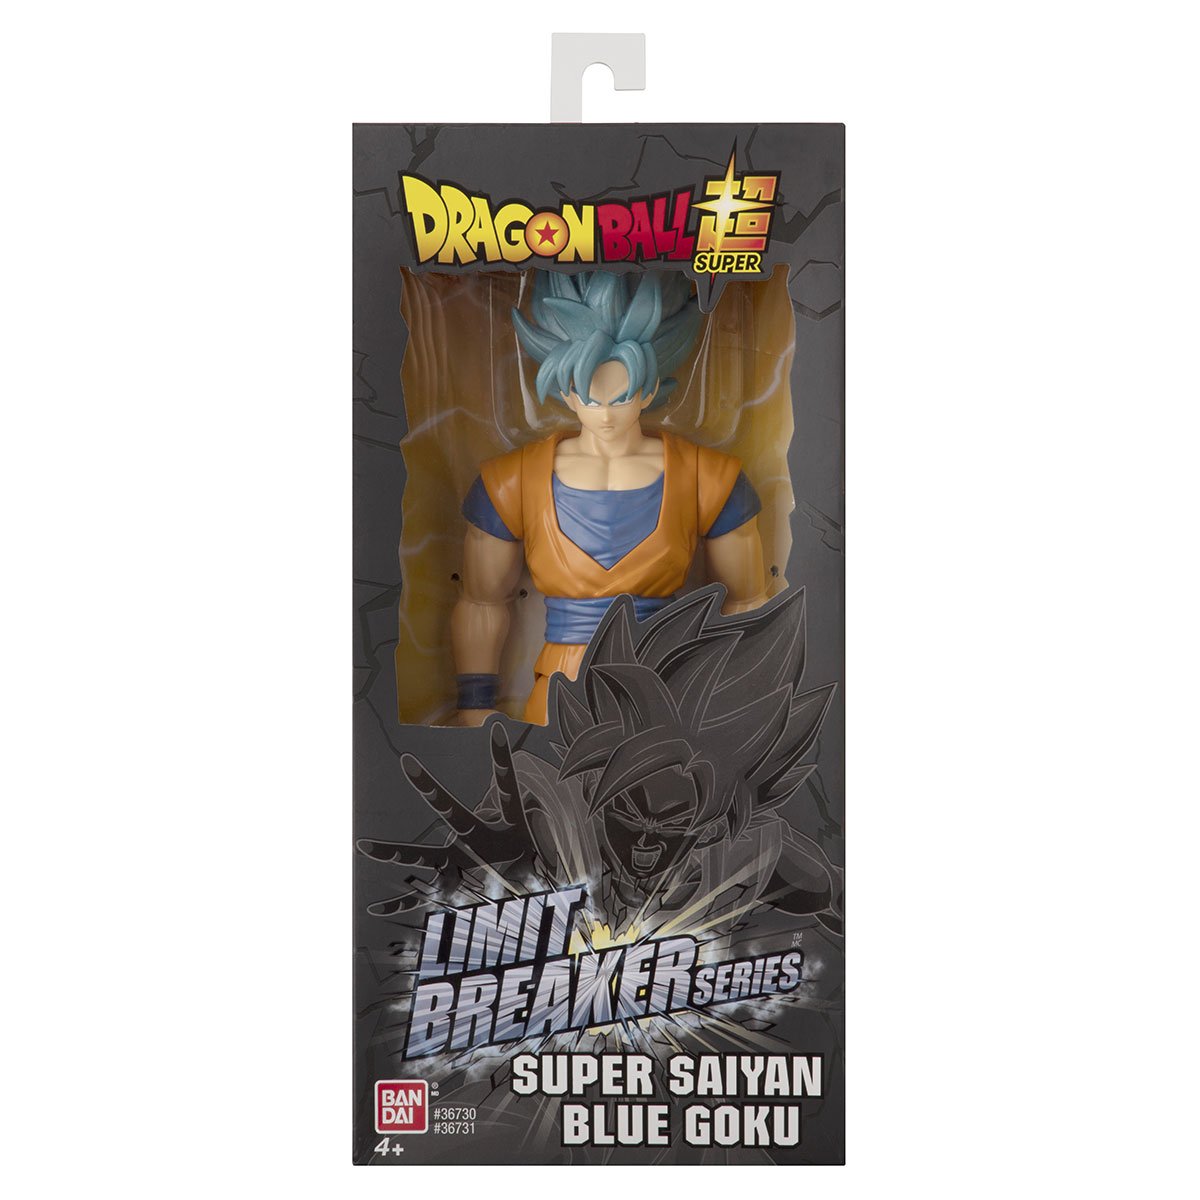 Dragon Ball - pack de 3 figurines flash series - 10 cm - La Grande Récré